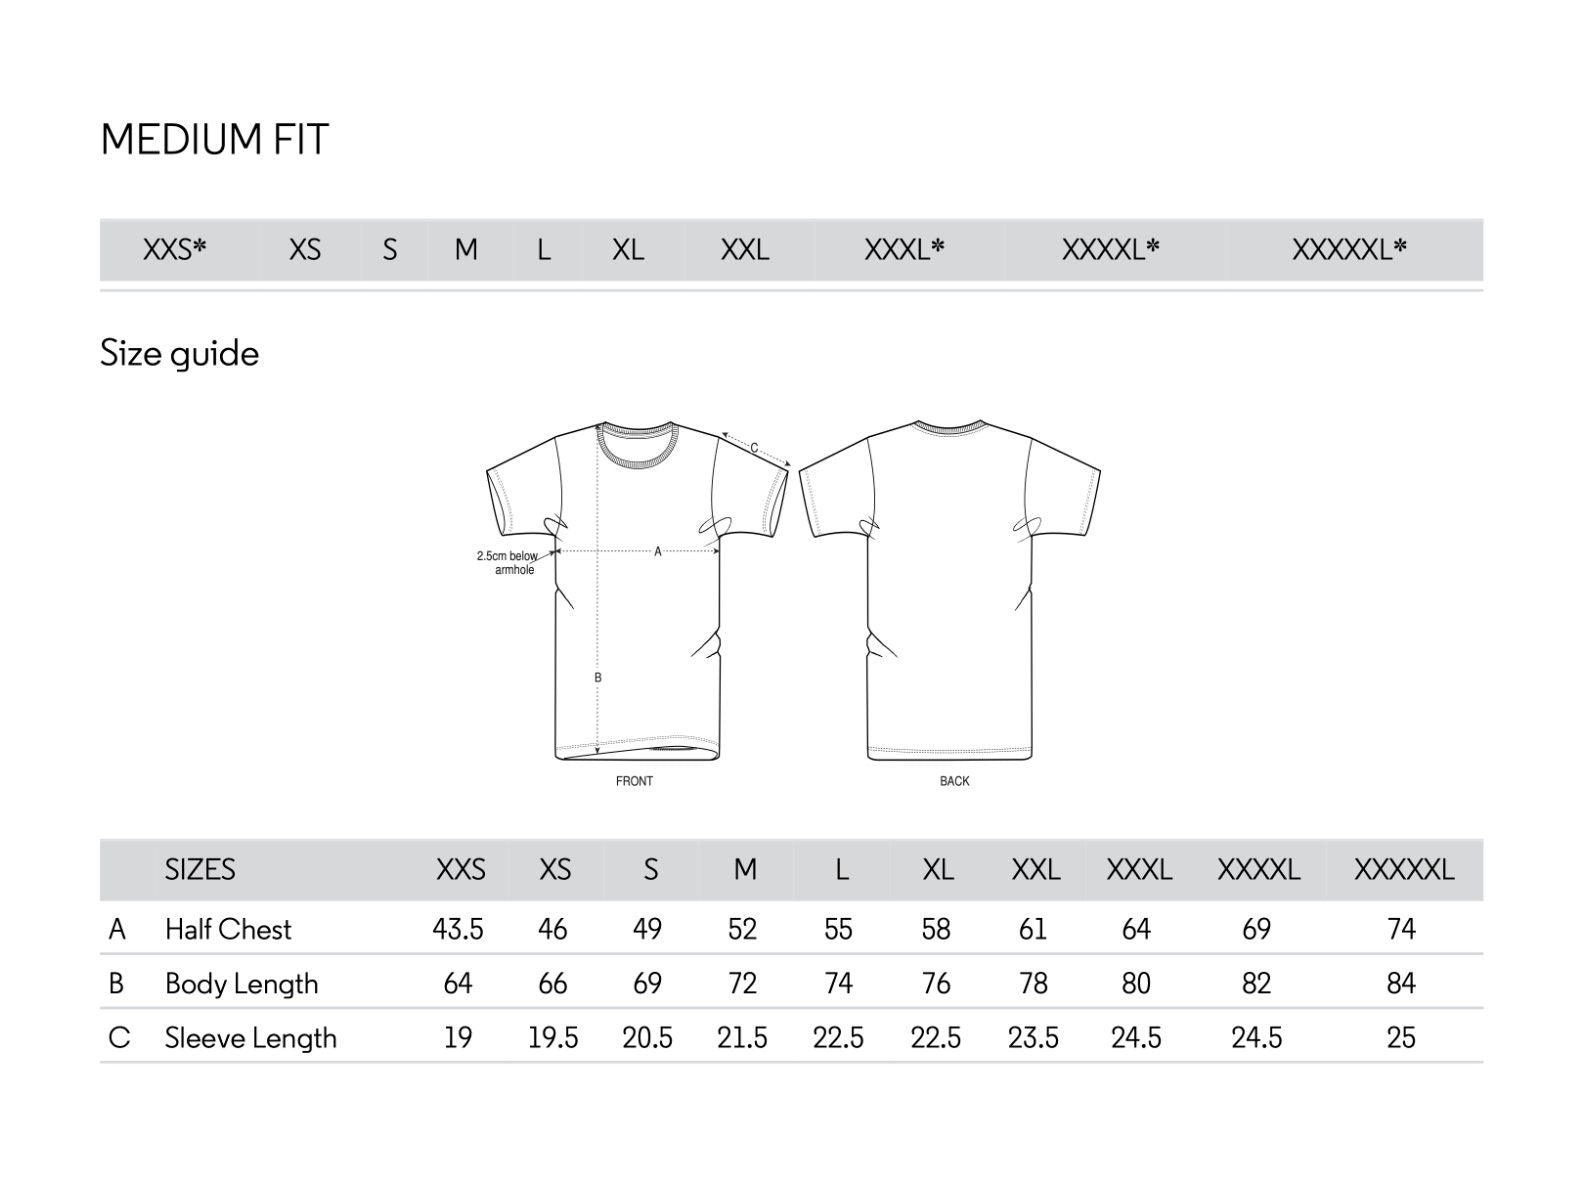 KONO BAIREI - Tiger T-Shirt - Pathos Studio - Shirts & Tops